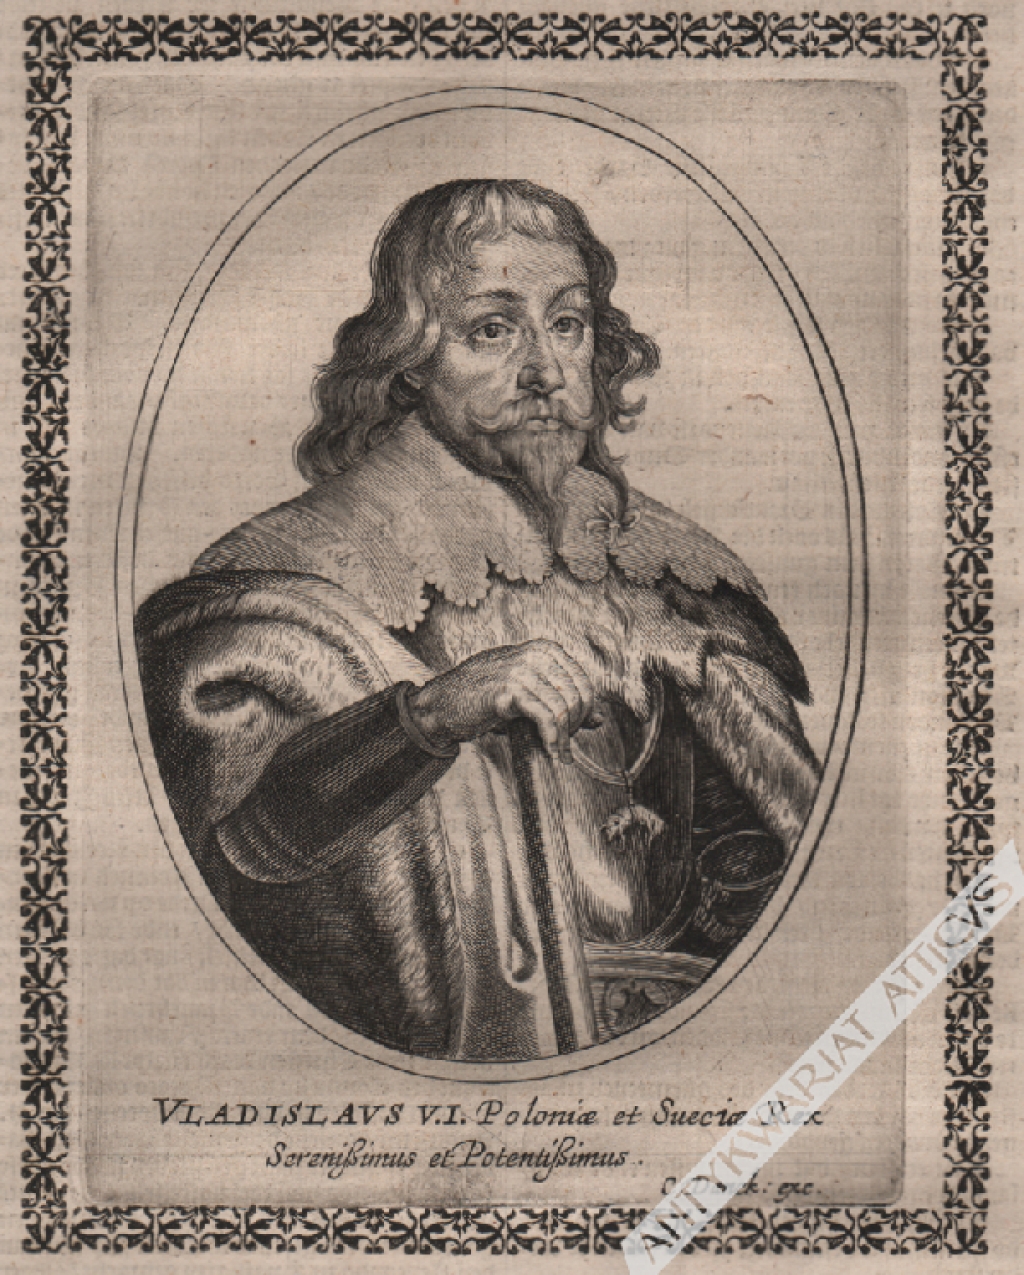 [rycina, po 1632] Vladislaus V.I. Poloniae et Sueciae Rex Serenissimus et Potentissimus [portret króla Władysława IV Wazy]